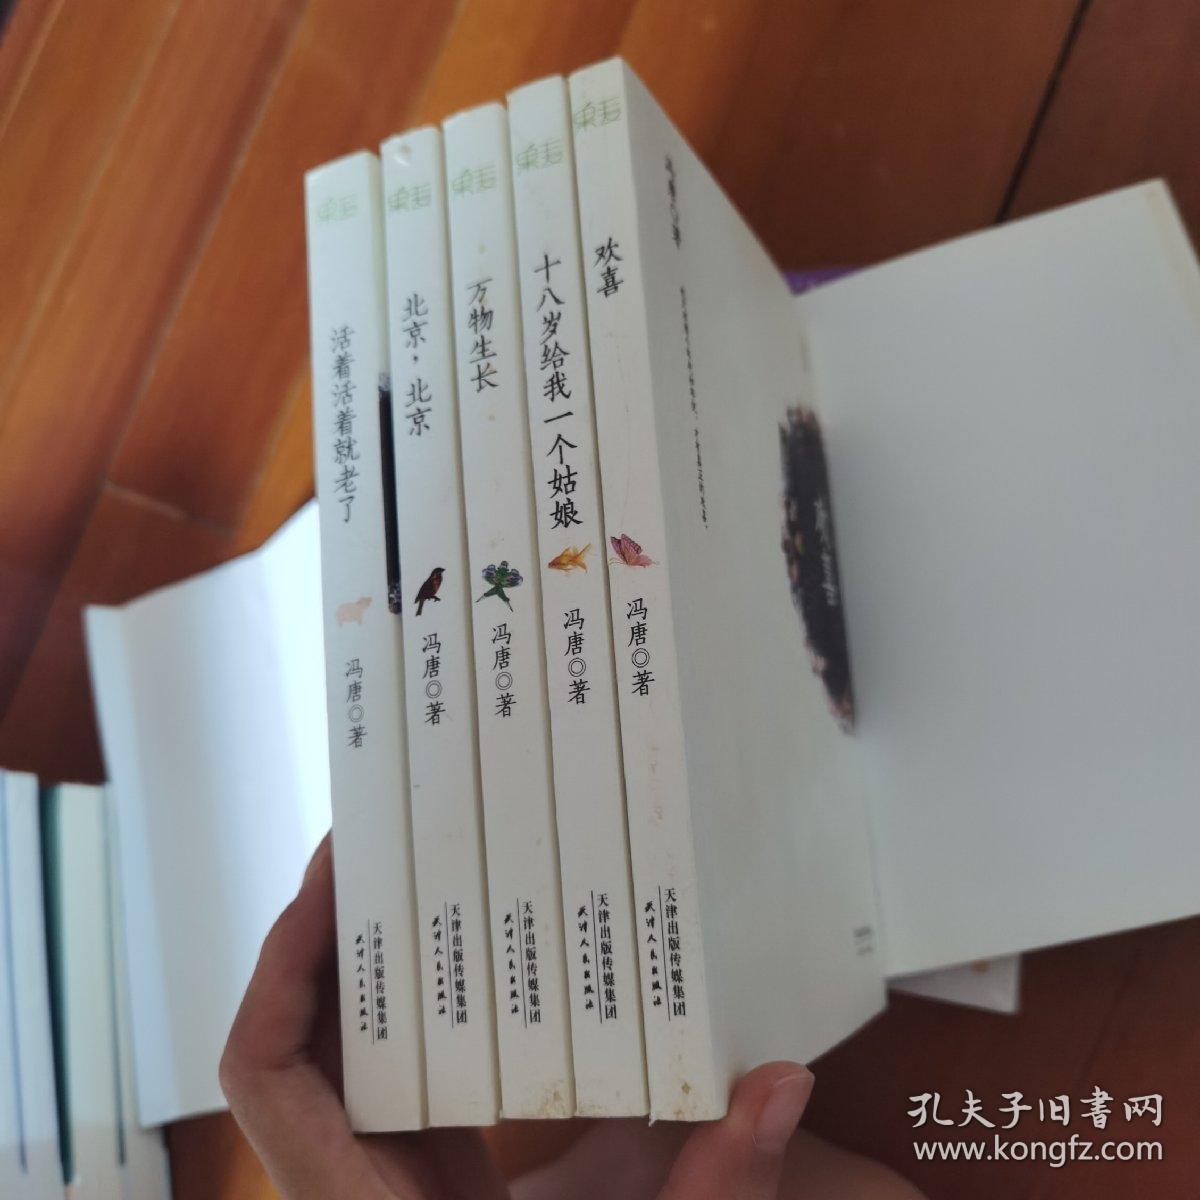 冯唐文集 全五册合售